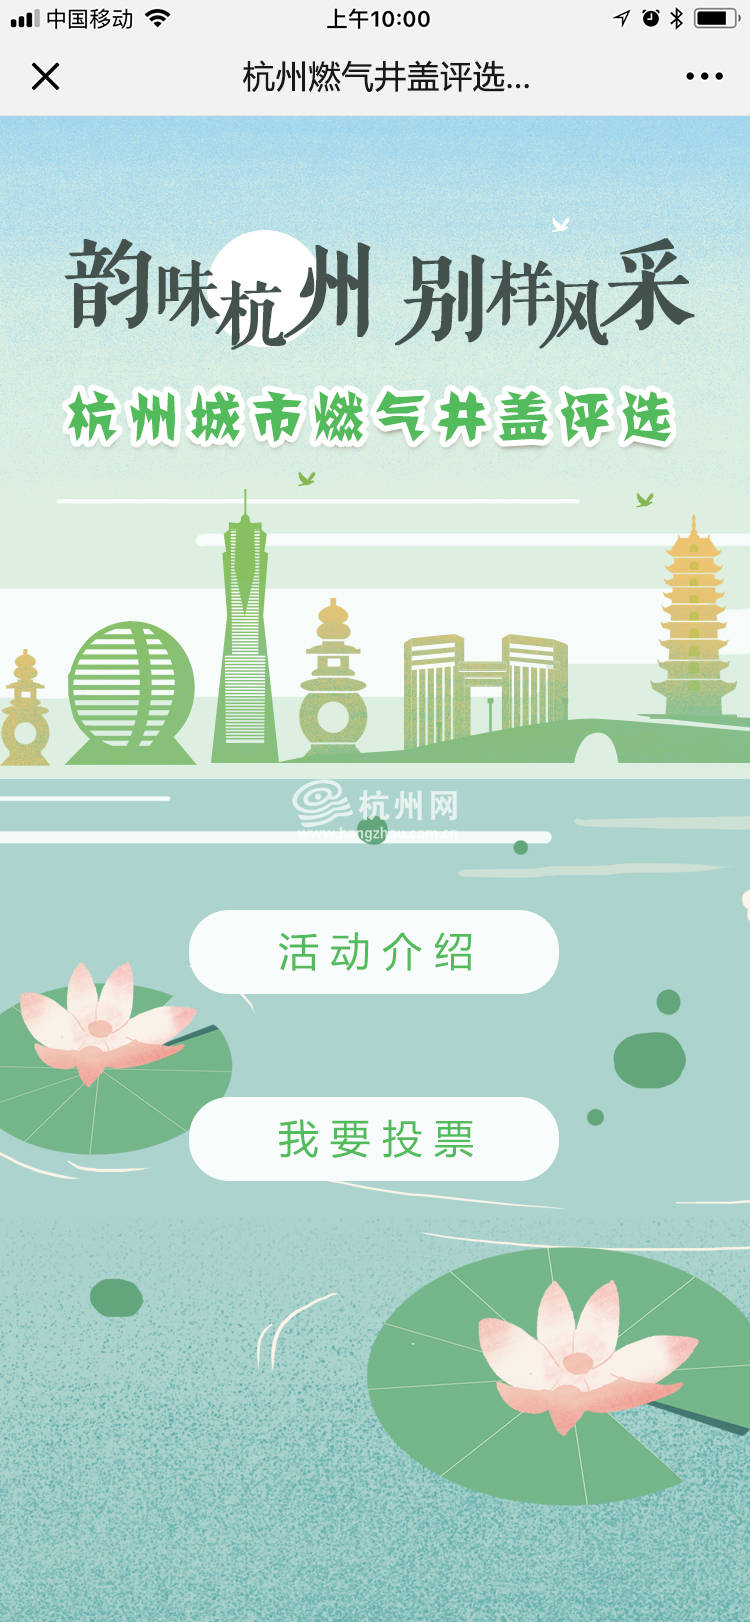 杭州燃气井盖评选活动页面设计(03)